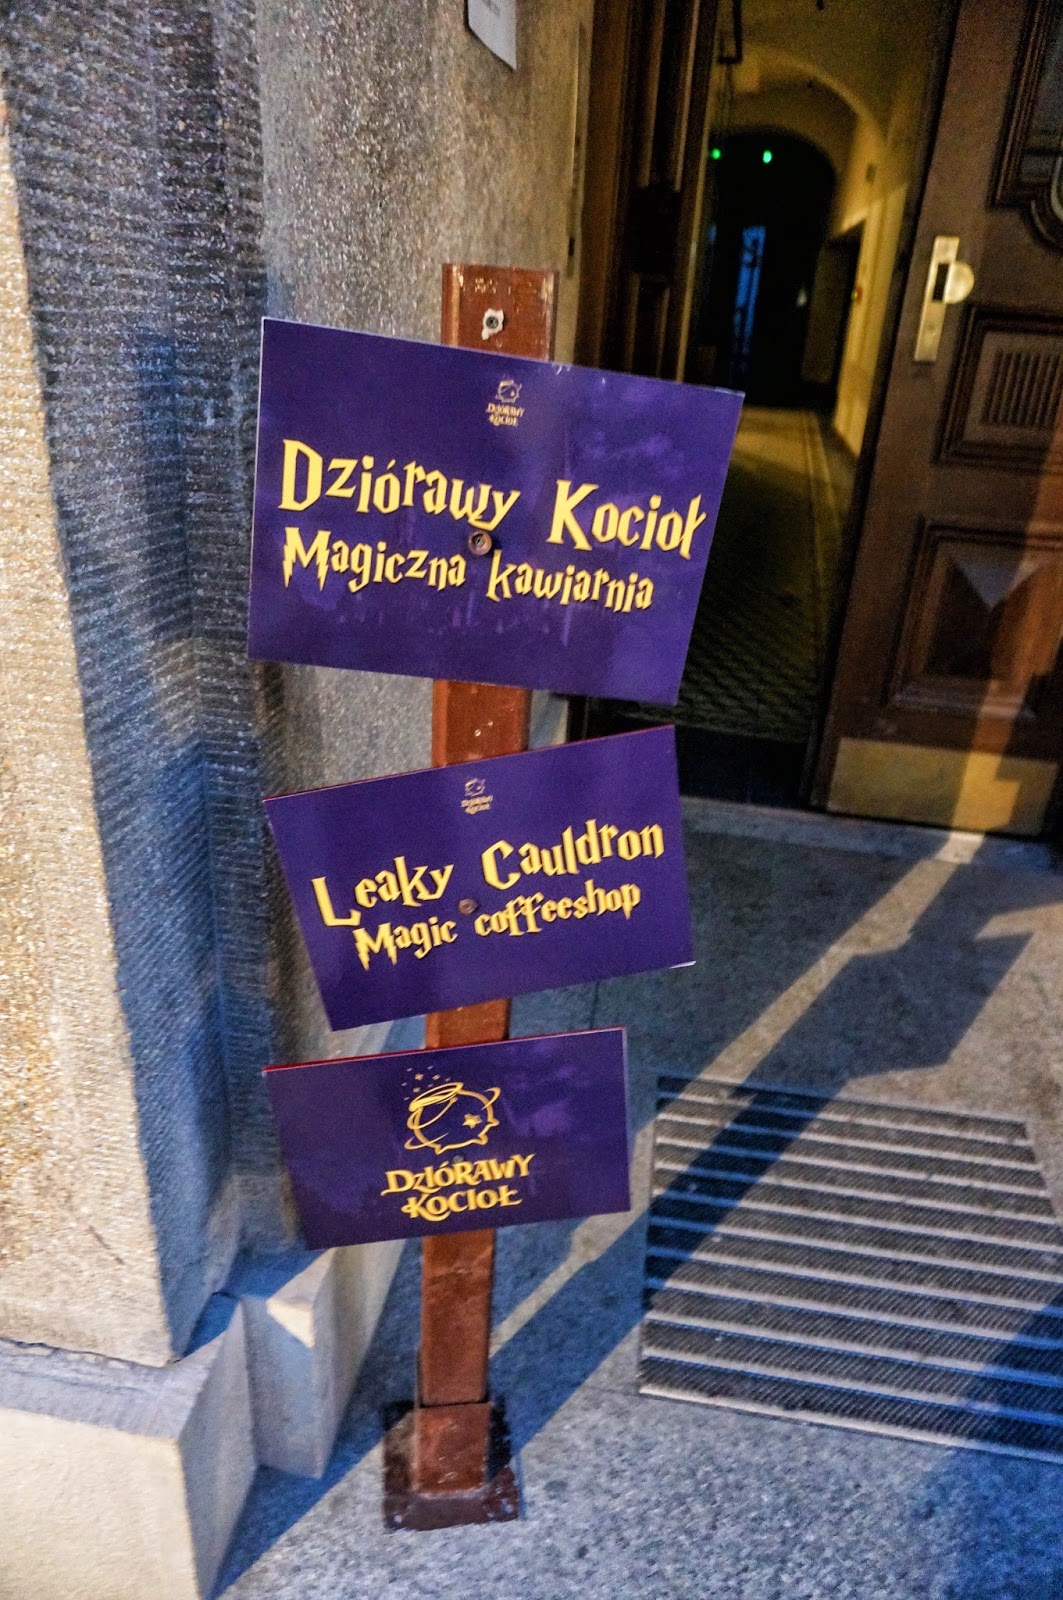 Dziórawy Kocioł w Krakowie, Harry Potter restauracja, potterowa restauracja, tematyczna restauracja Kraków